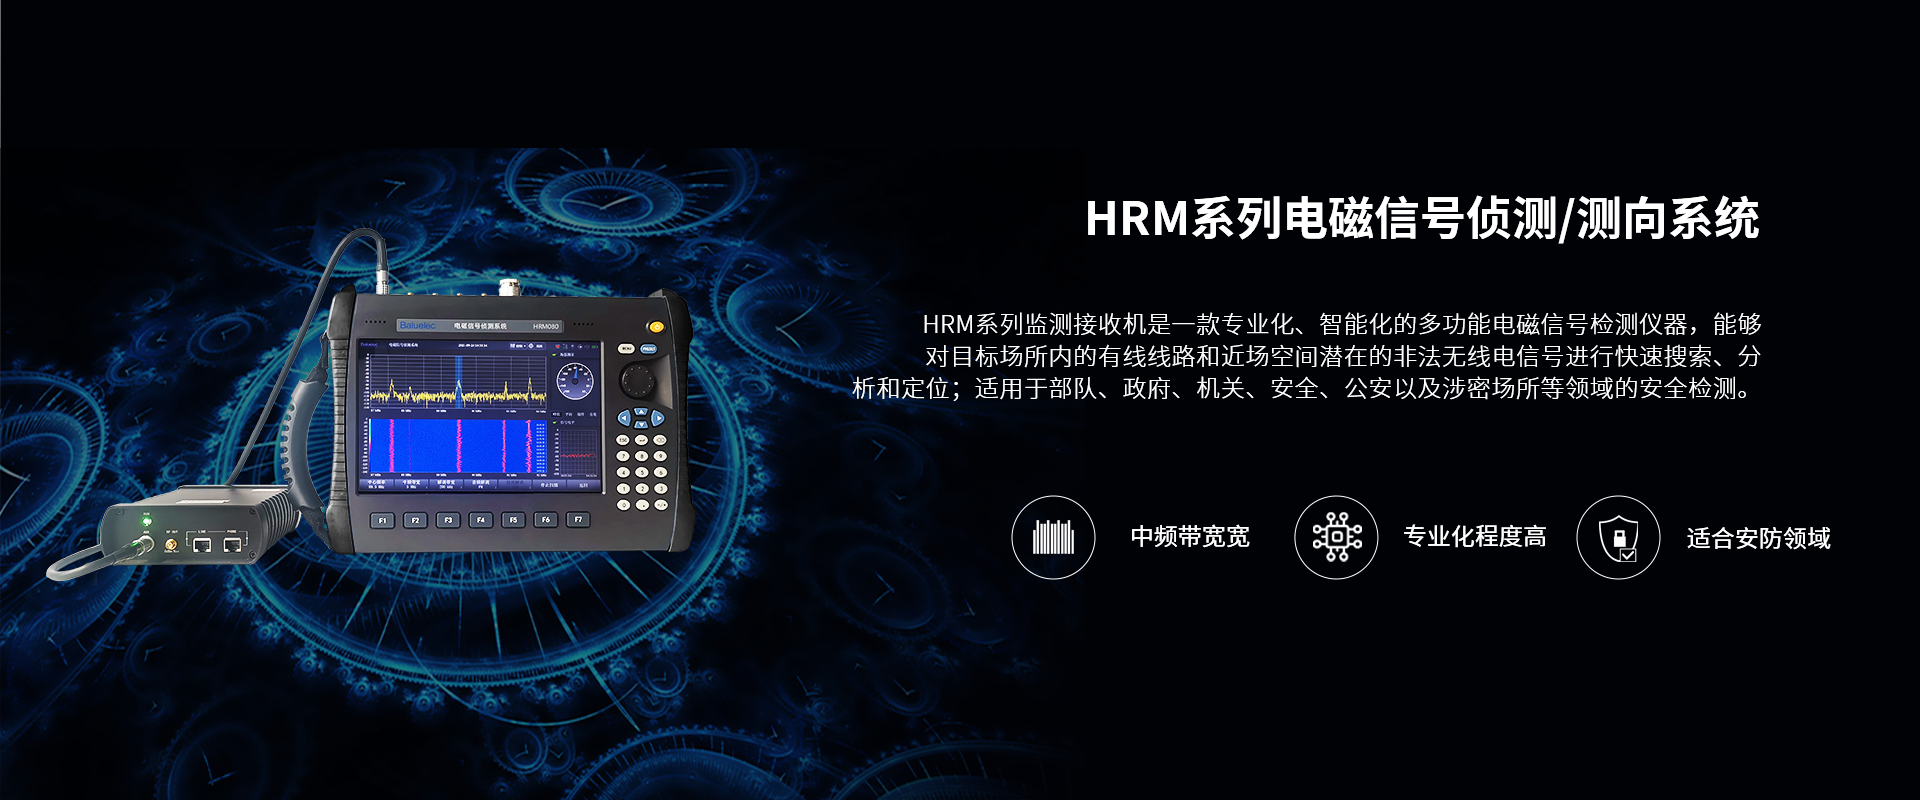 HRM系列电磁信号侦测